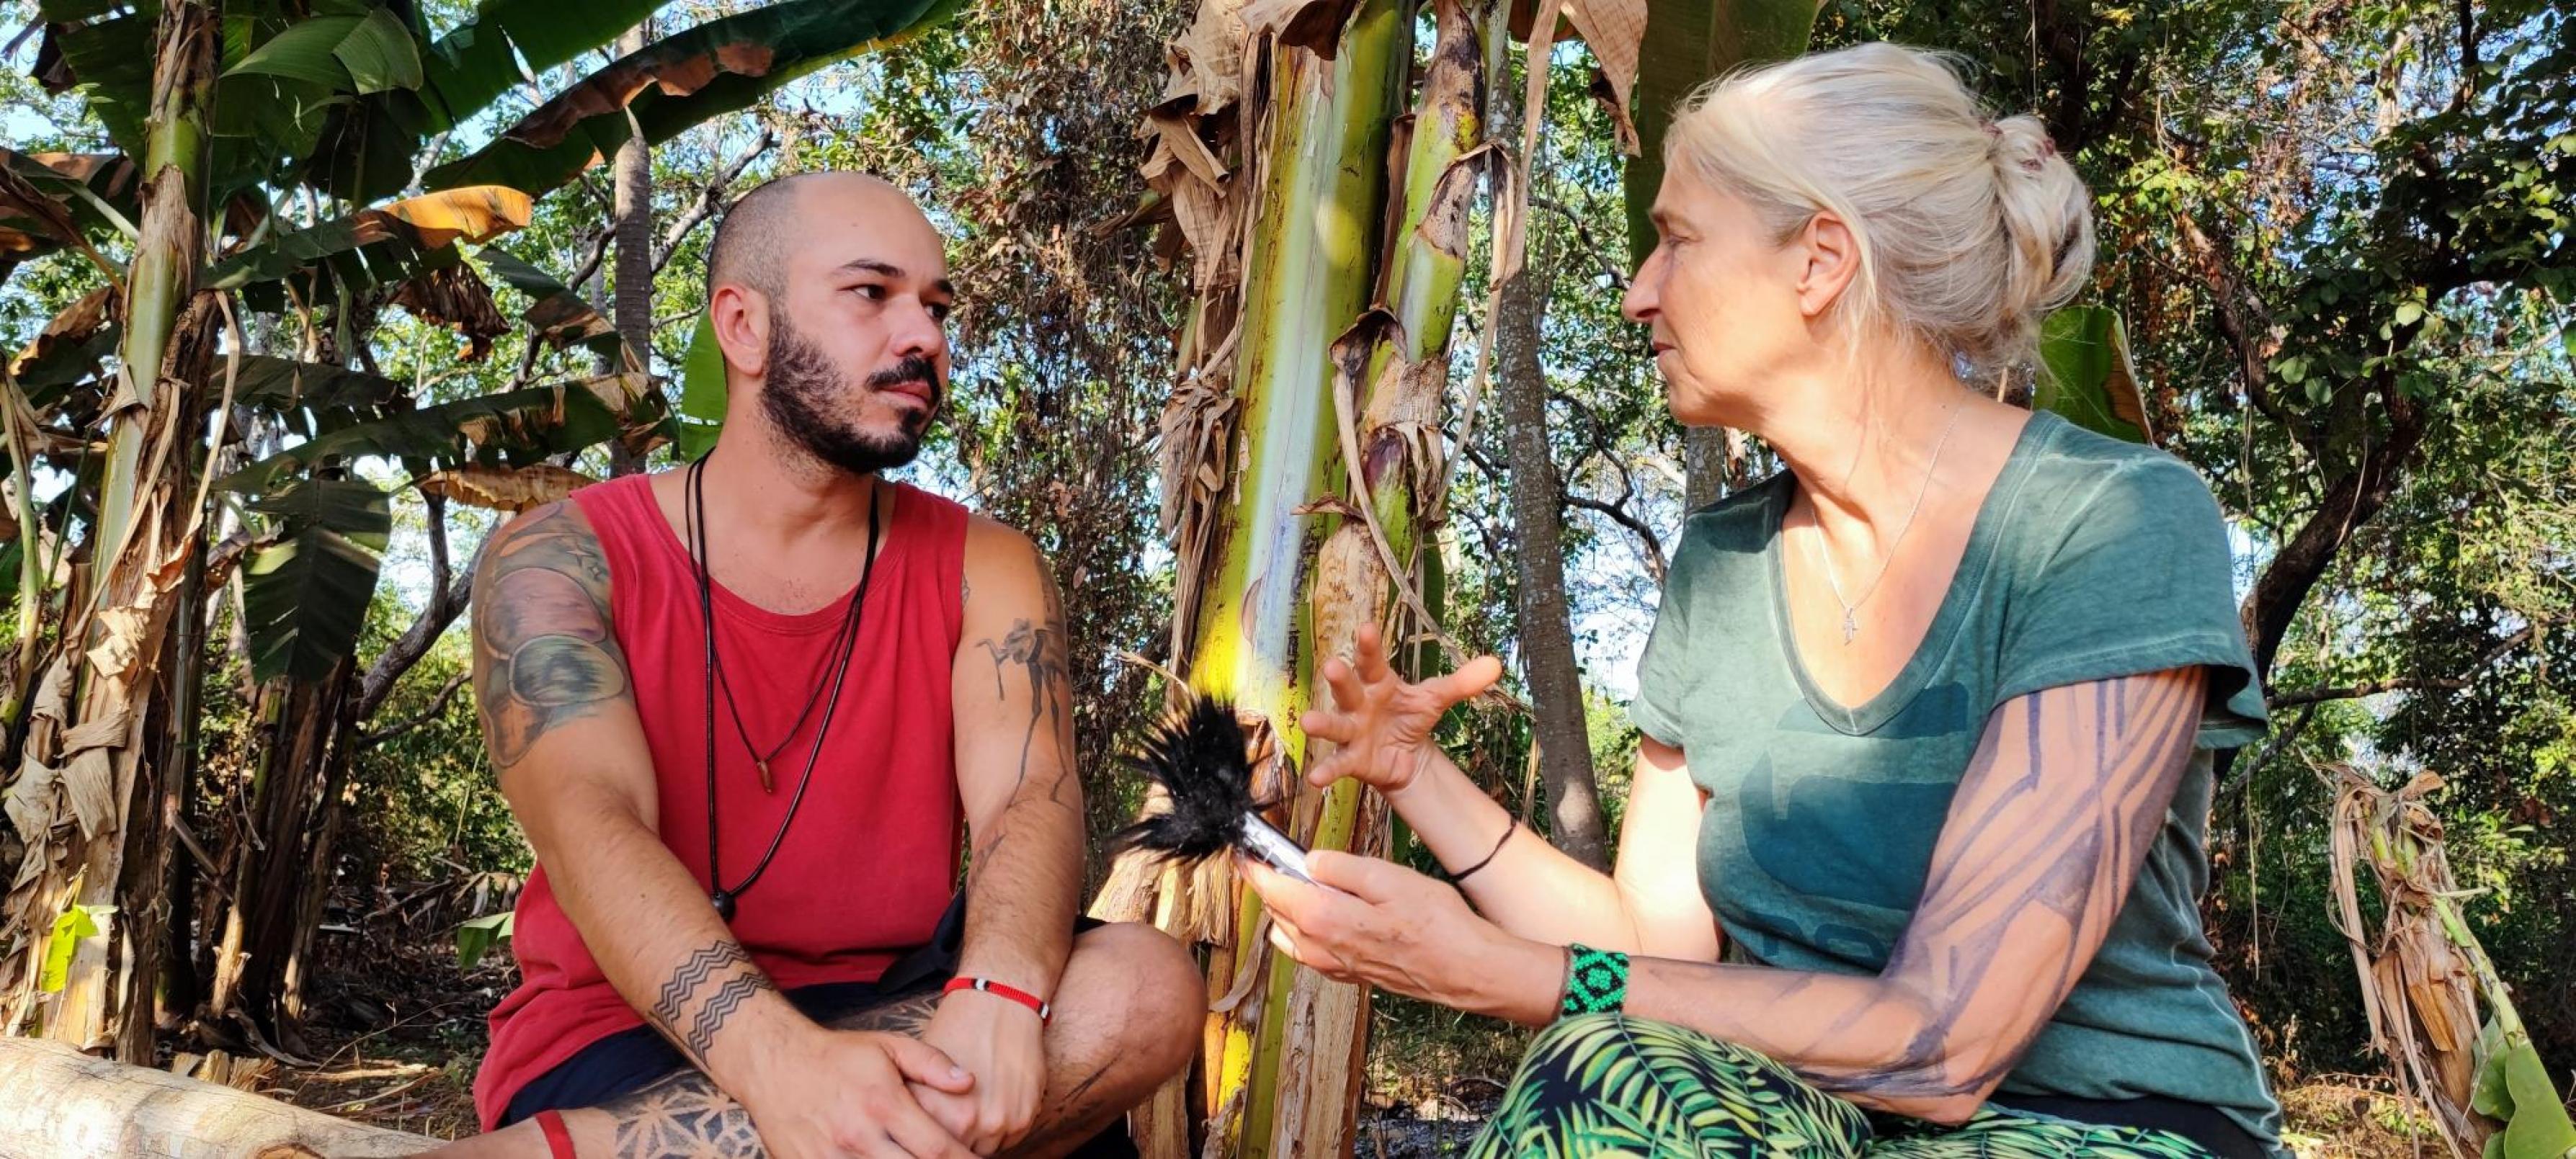 Ein Mann mit Tatoos, indigenem Schmuck und sanftem Blick wird von der Autorin interviewt. Beide sitzen am Rand des Dorfes auf einem Baumstamm.